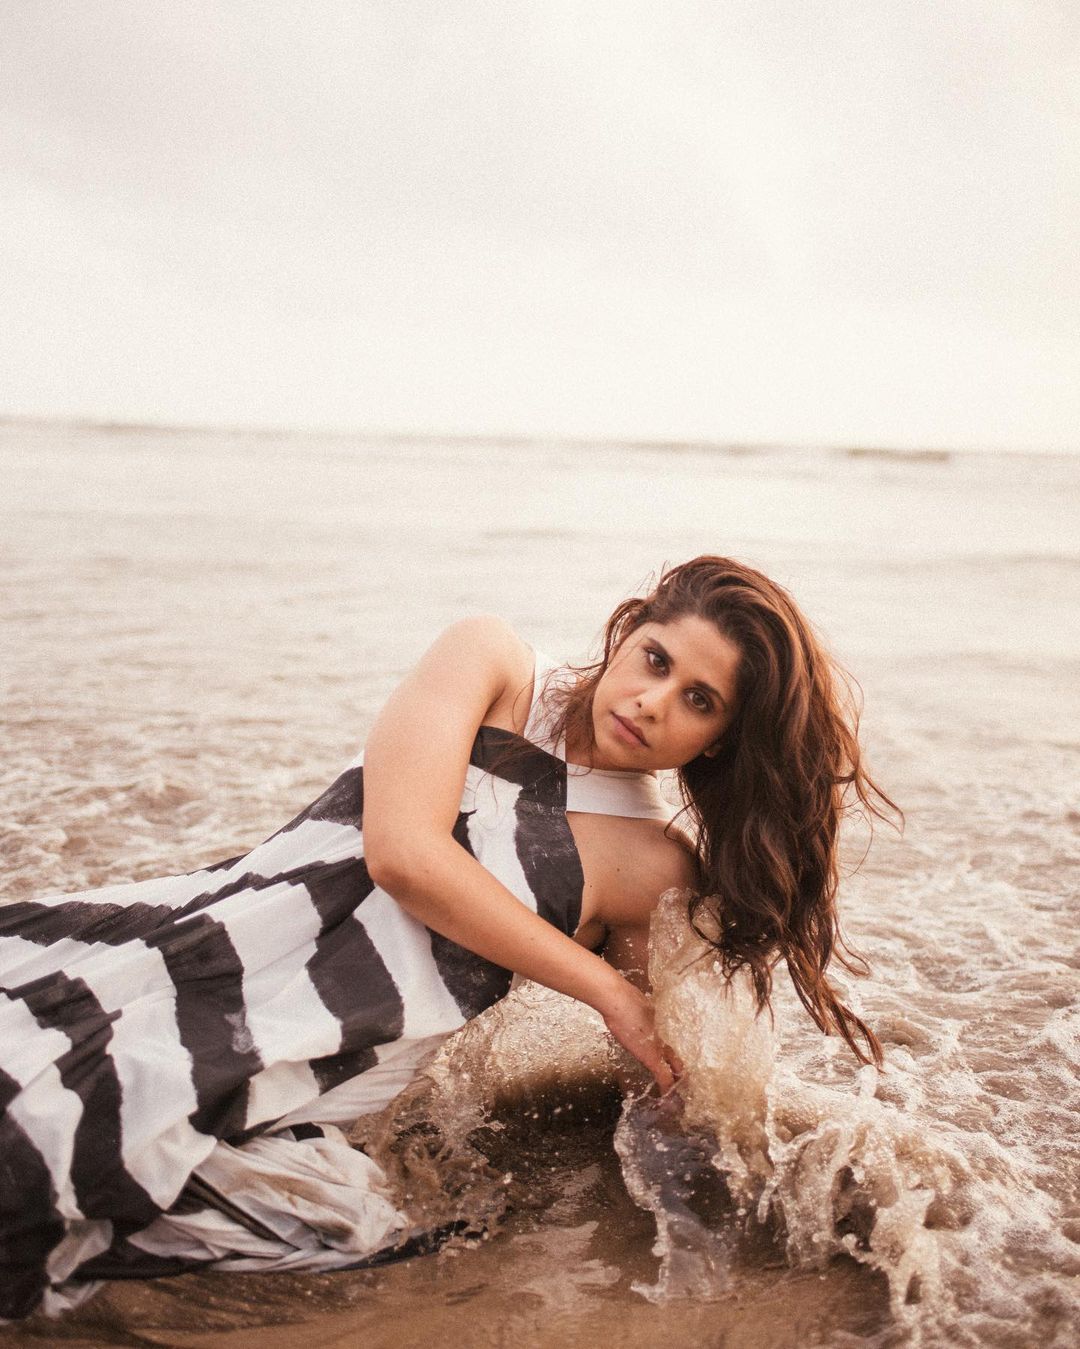 Sai Tamhankar strikes a bold pose as she dons a black and white dress at the beach